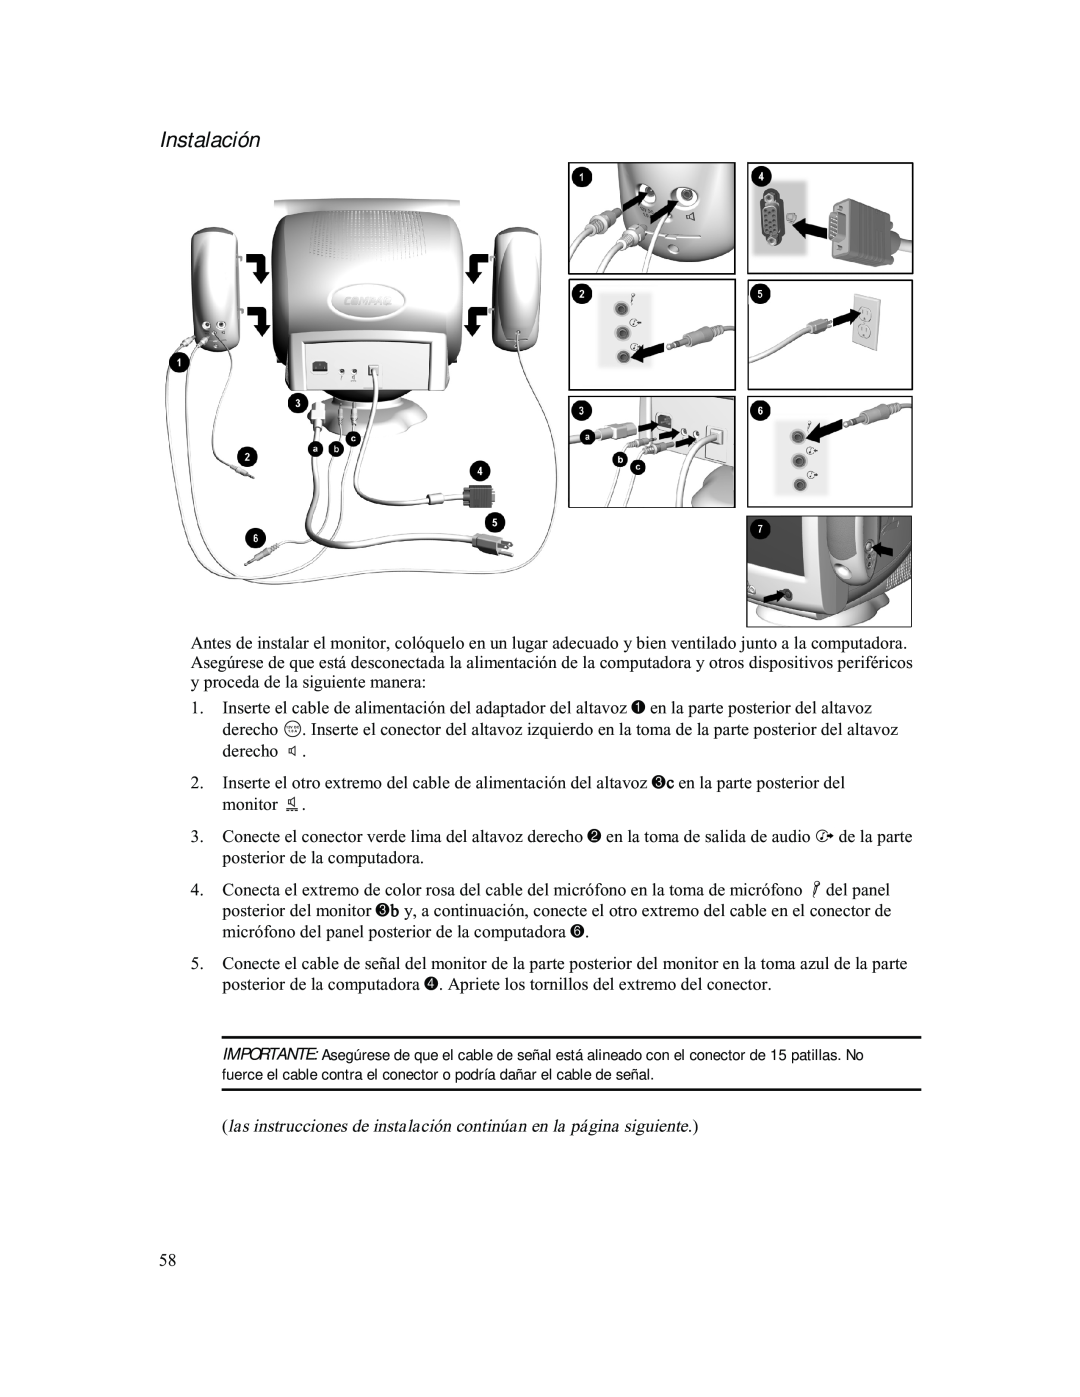 Compaq 740 manual Instalación, las instrucciones de instalación continúan en la página siguiente 